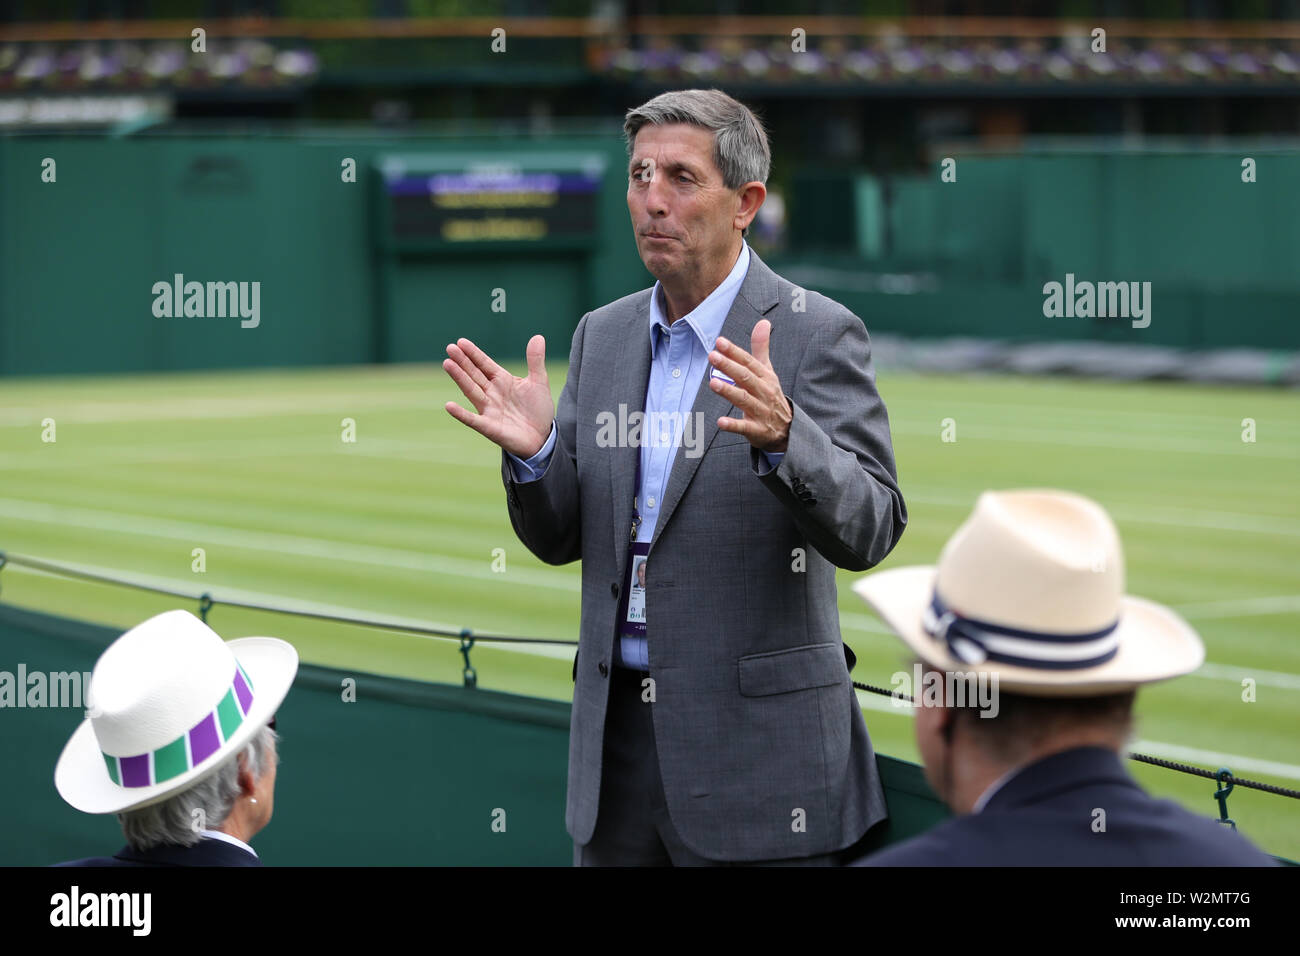 Wimbledon, Royaume-Uni. 10 juillet, 2019. Tennis de Wimbledon. Andrew Jarrett, arbitre du tournoi, 2019 Allstar Crédit : photo library/Alamy Live News Banque D'Images